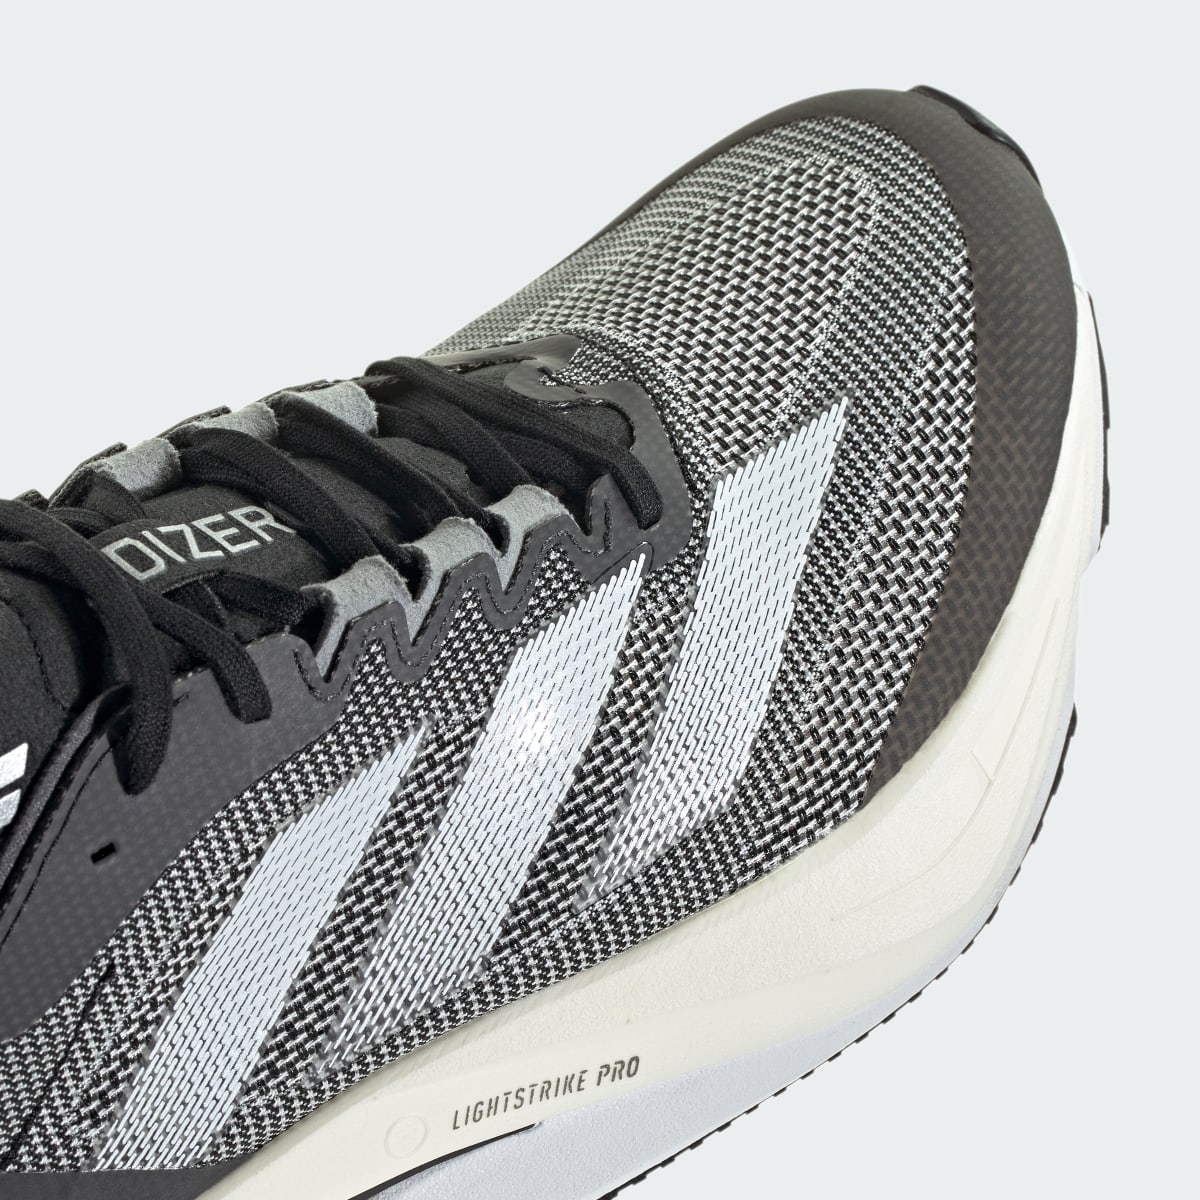 Adidas Adizero Boston 12 Running Shoes. 10